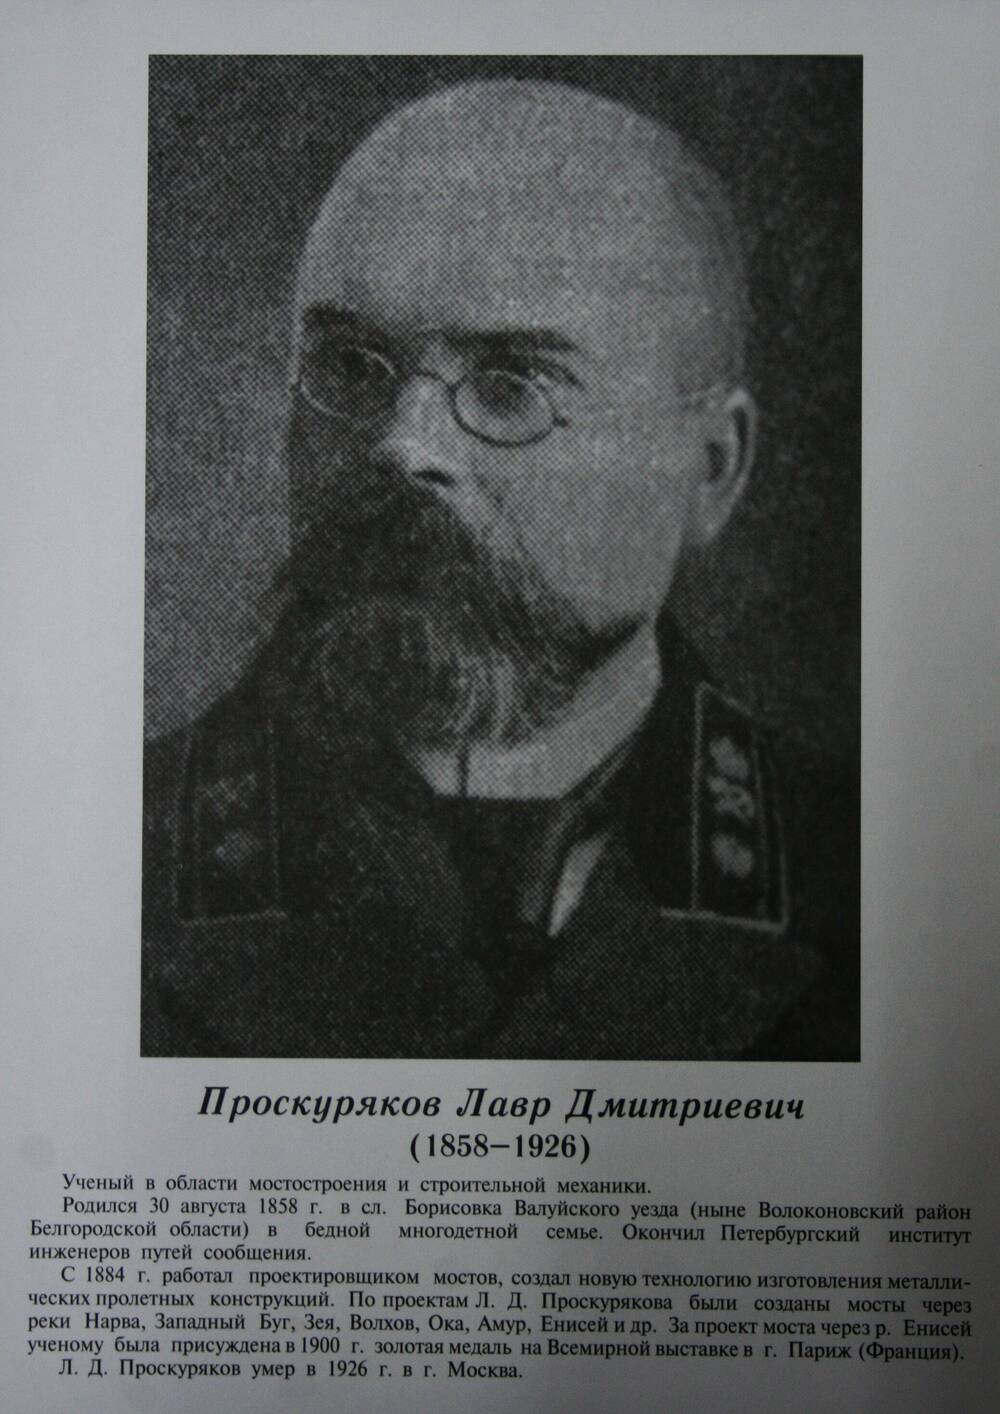 Плакат (фотопортрет) из комплекта Галерея славных имен Белгородчины. Проскуряков Лавр Дмитриевич (1858-1926).